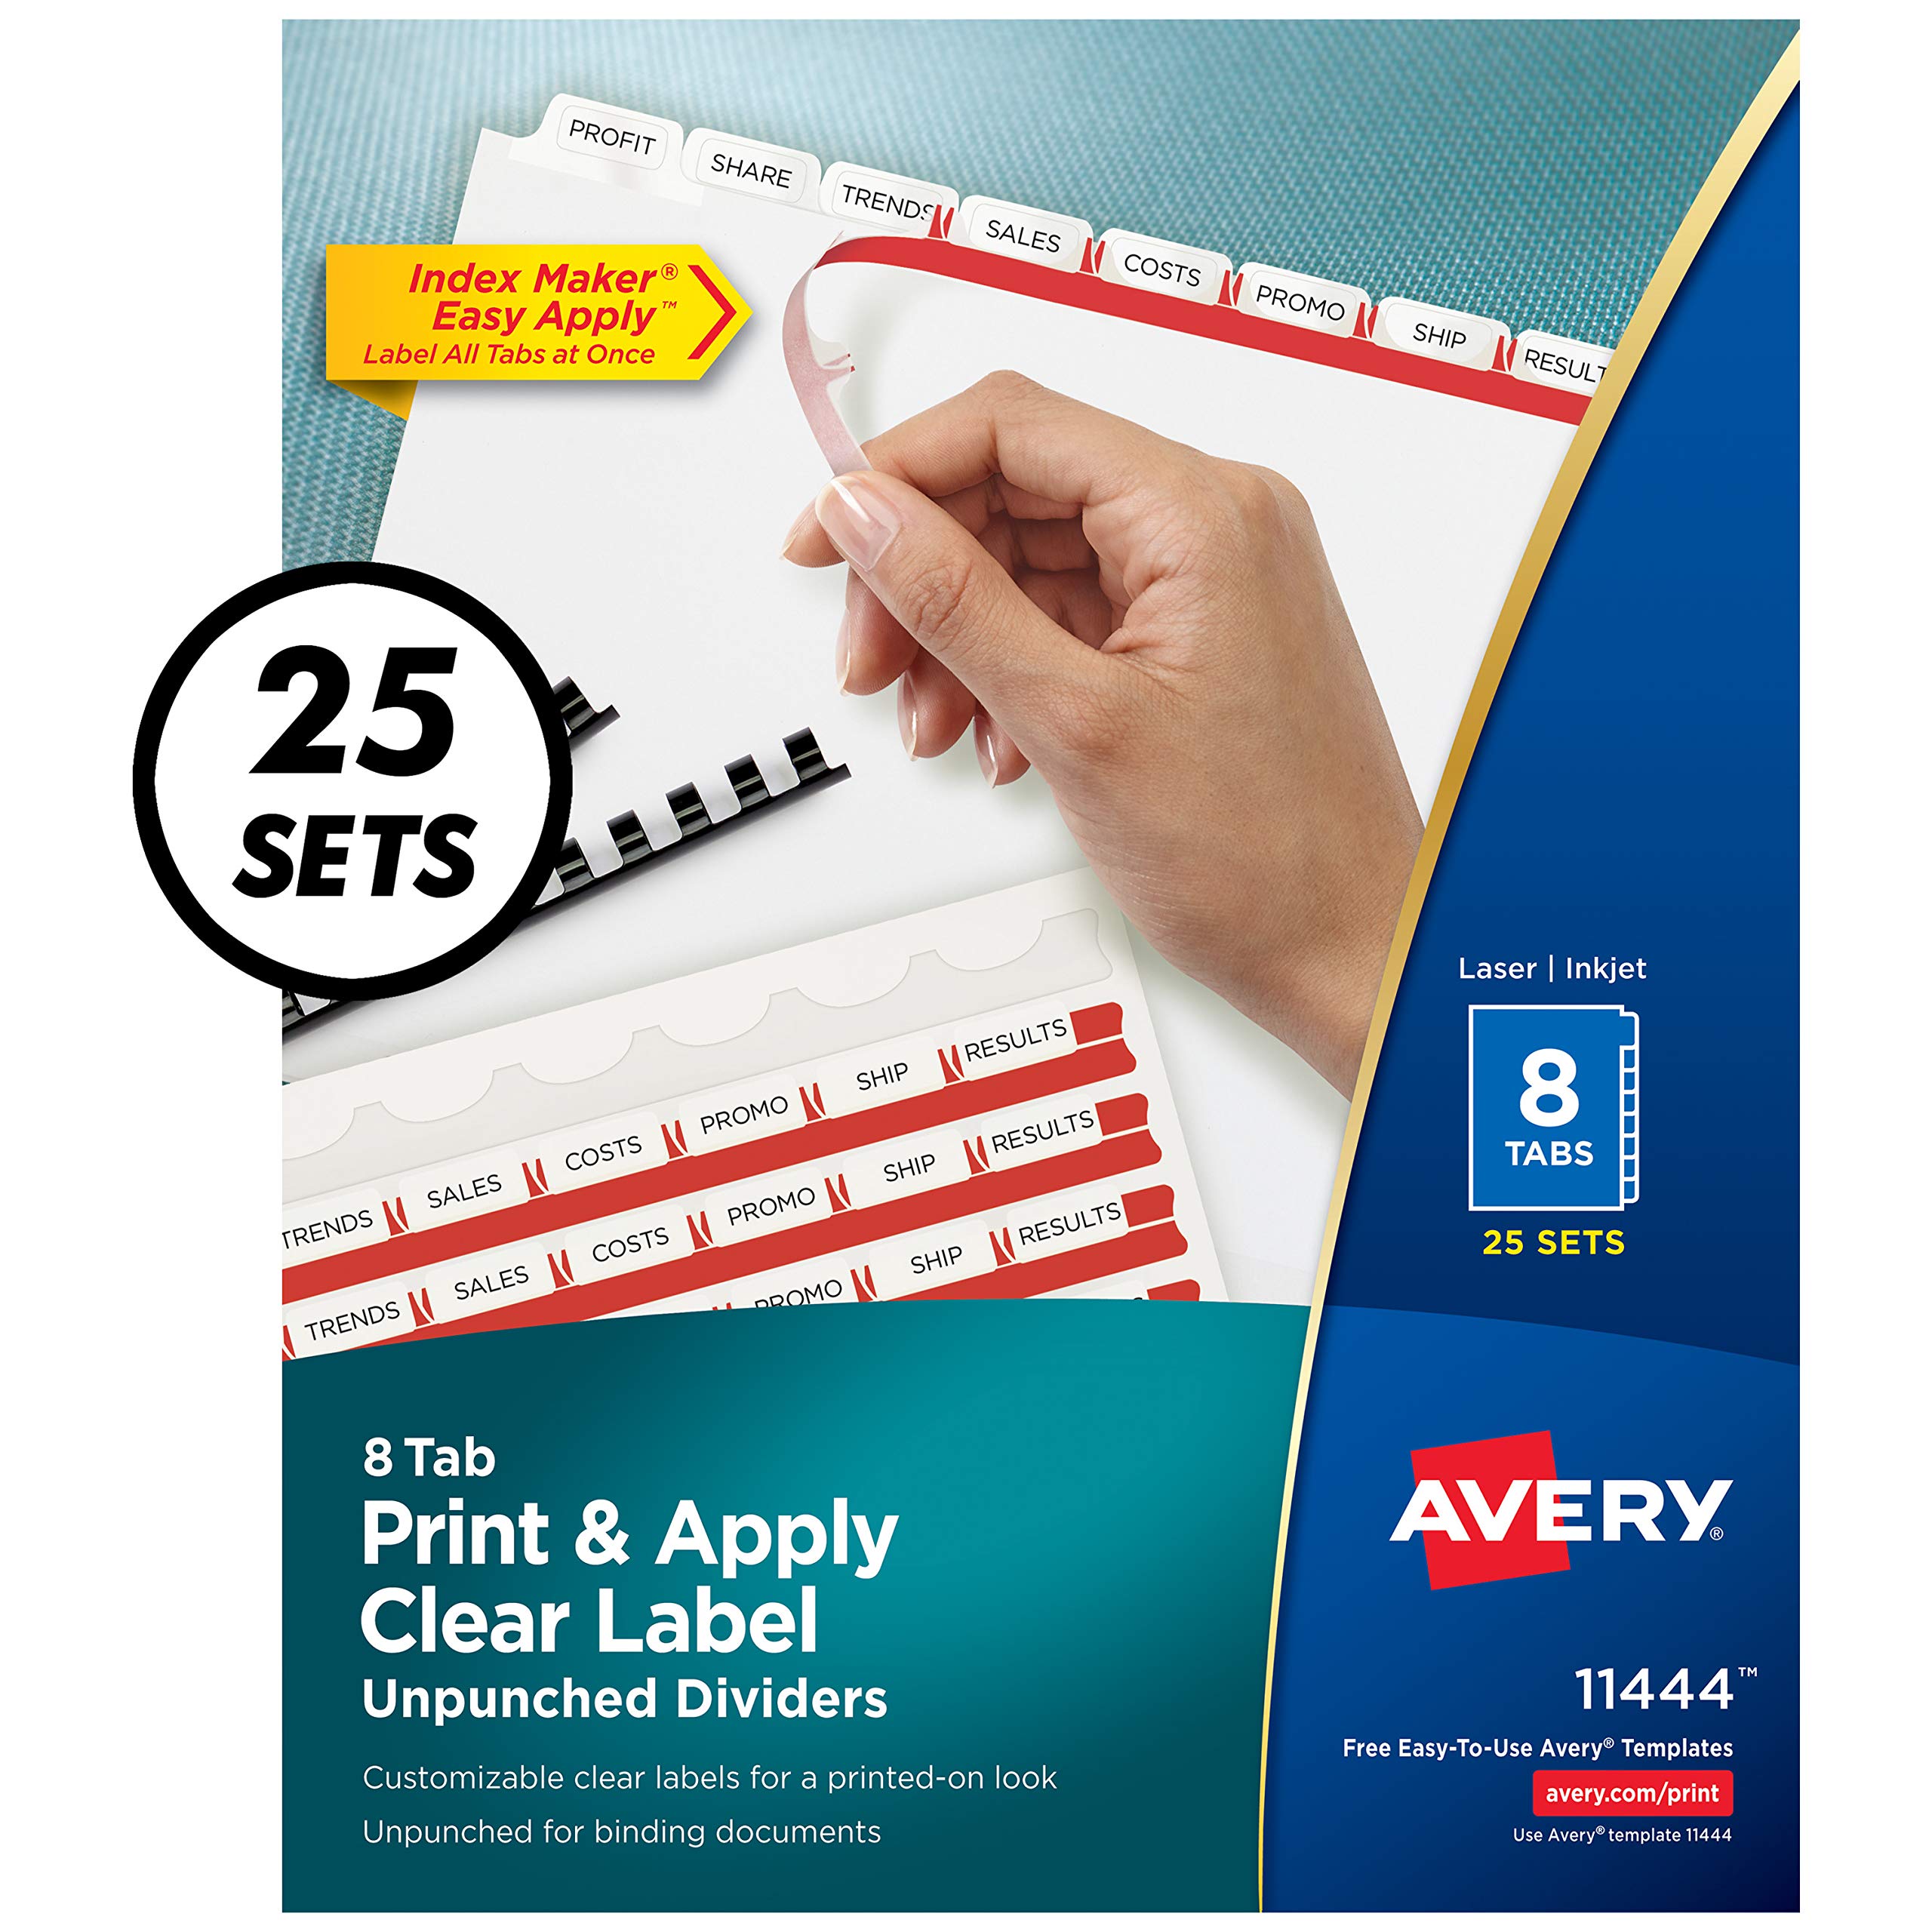  Avery 8タブ パンチなしバインダーディバイダー、簡単に印刷して貼れる透明ラベルストリップ、インデックスメーカー、ホワイトタブ、25セット、6...